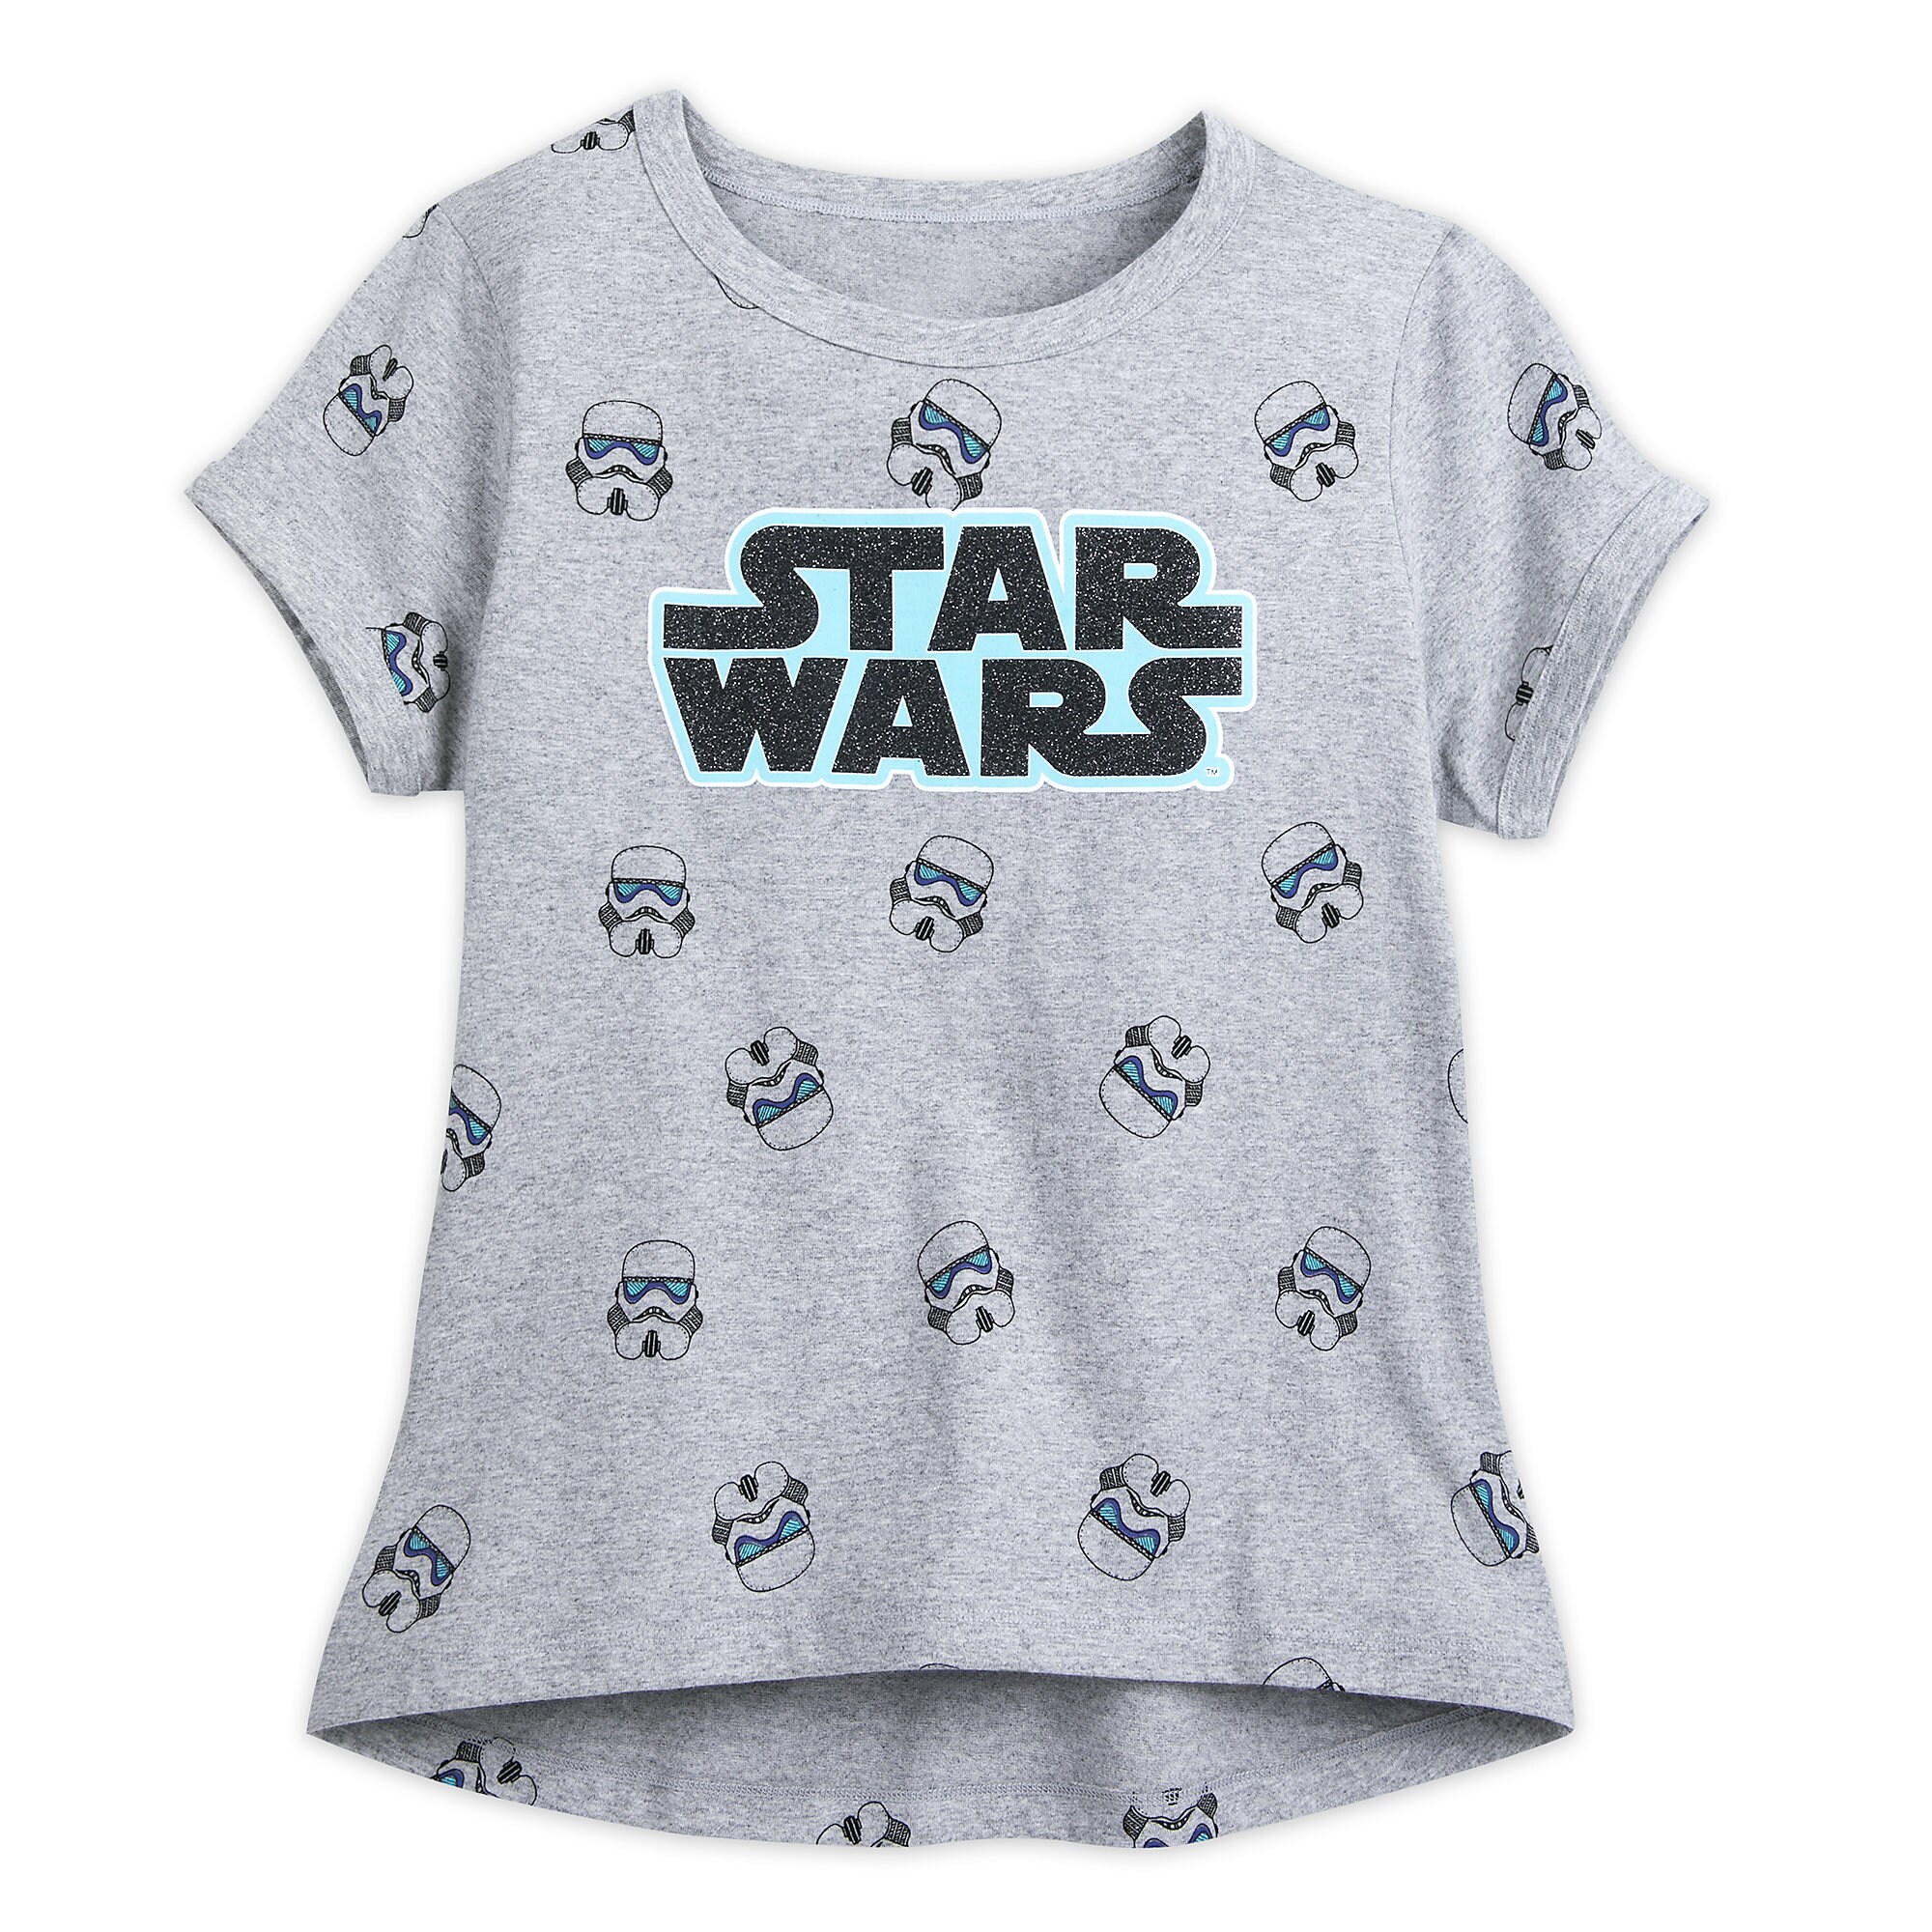 Star Wars Family T-Shirt for Women